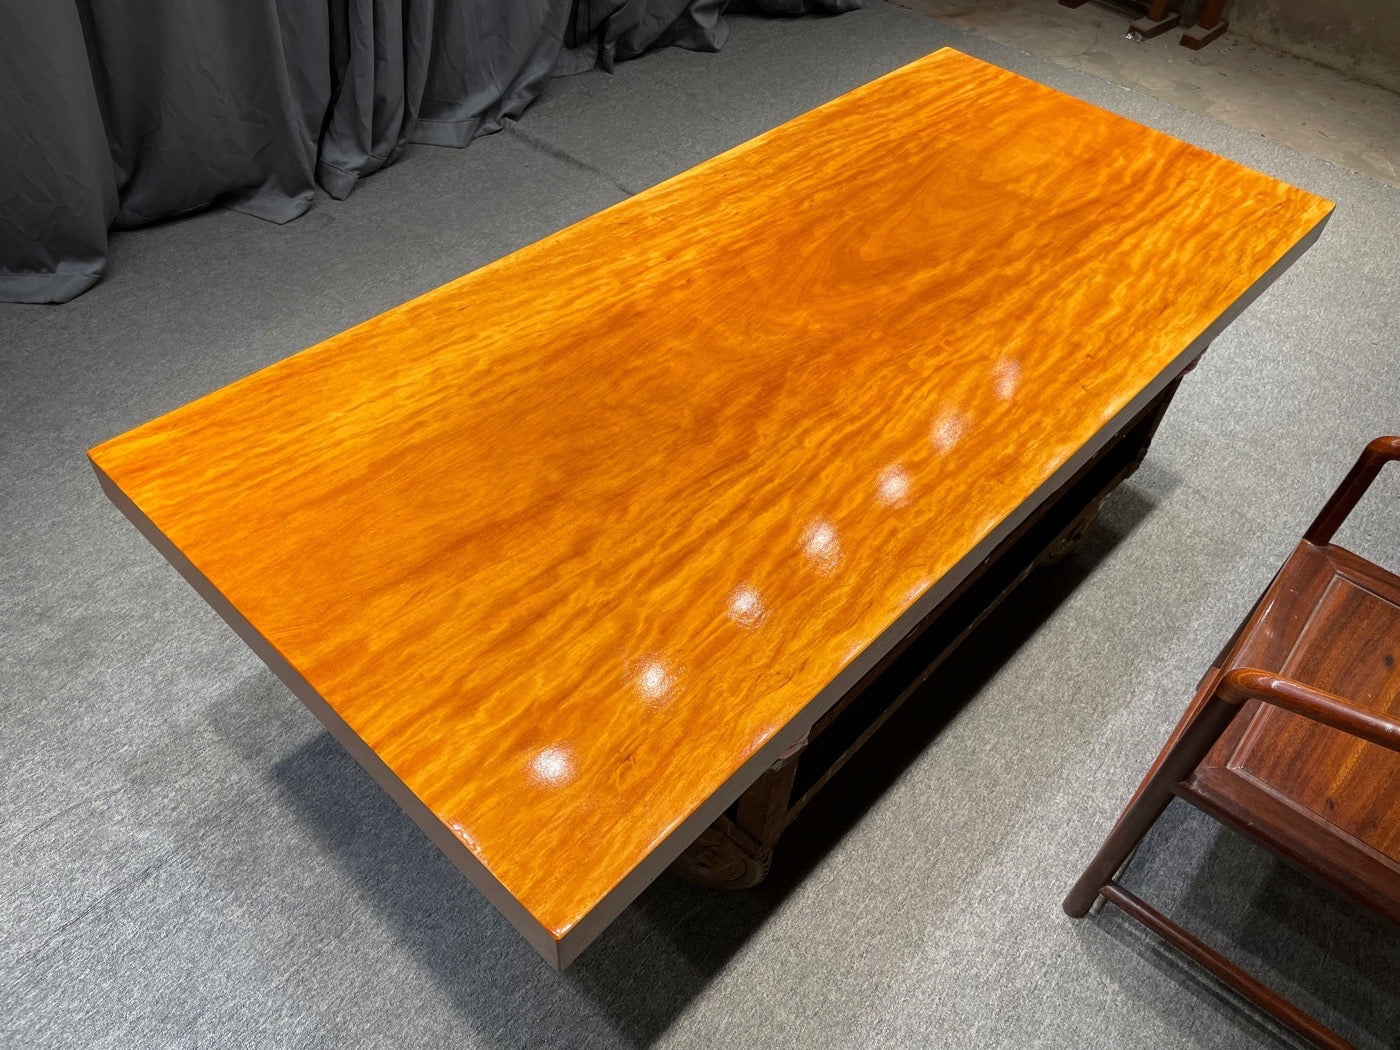 Scrivania da pranzo personalizzata in legno naturale, tavolo color arancione